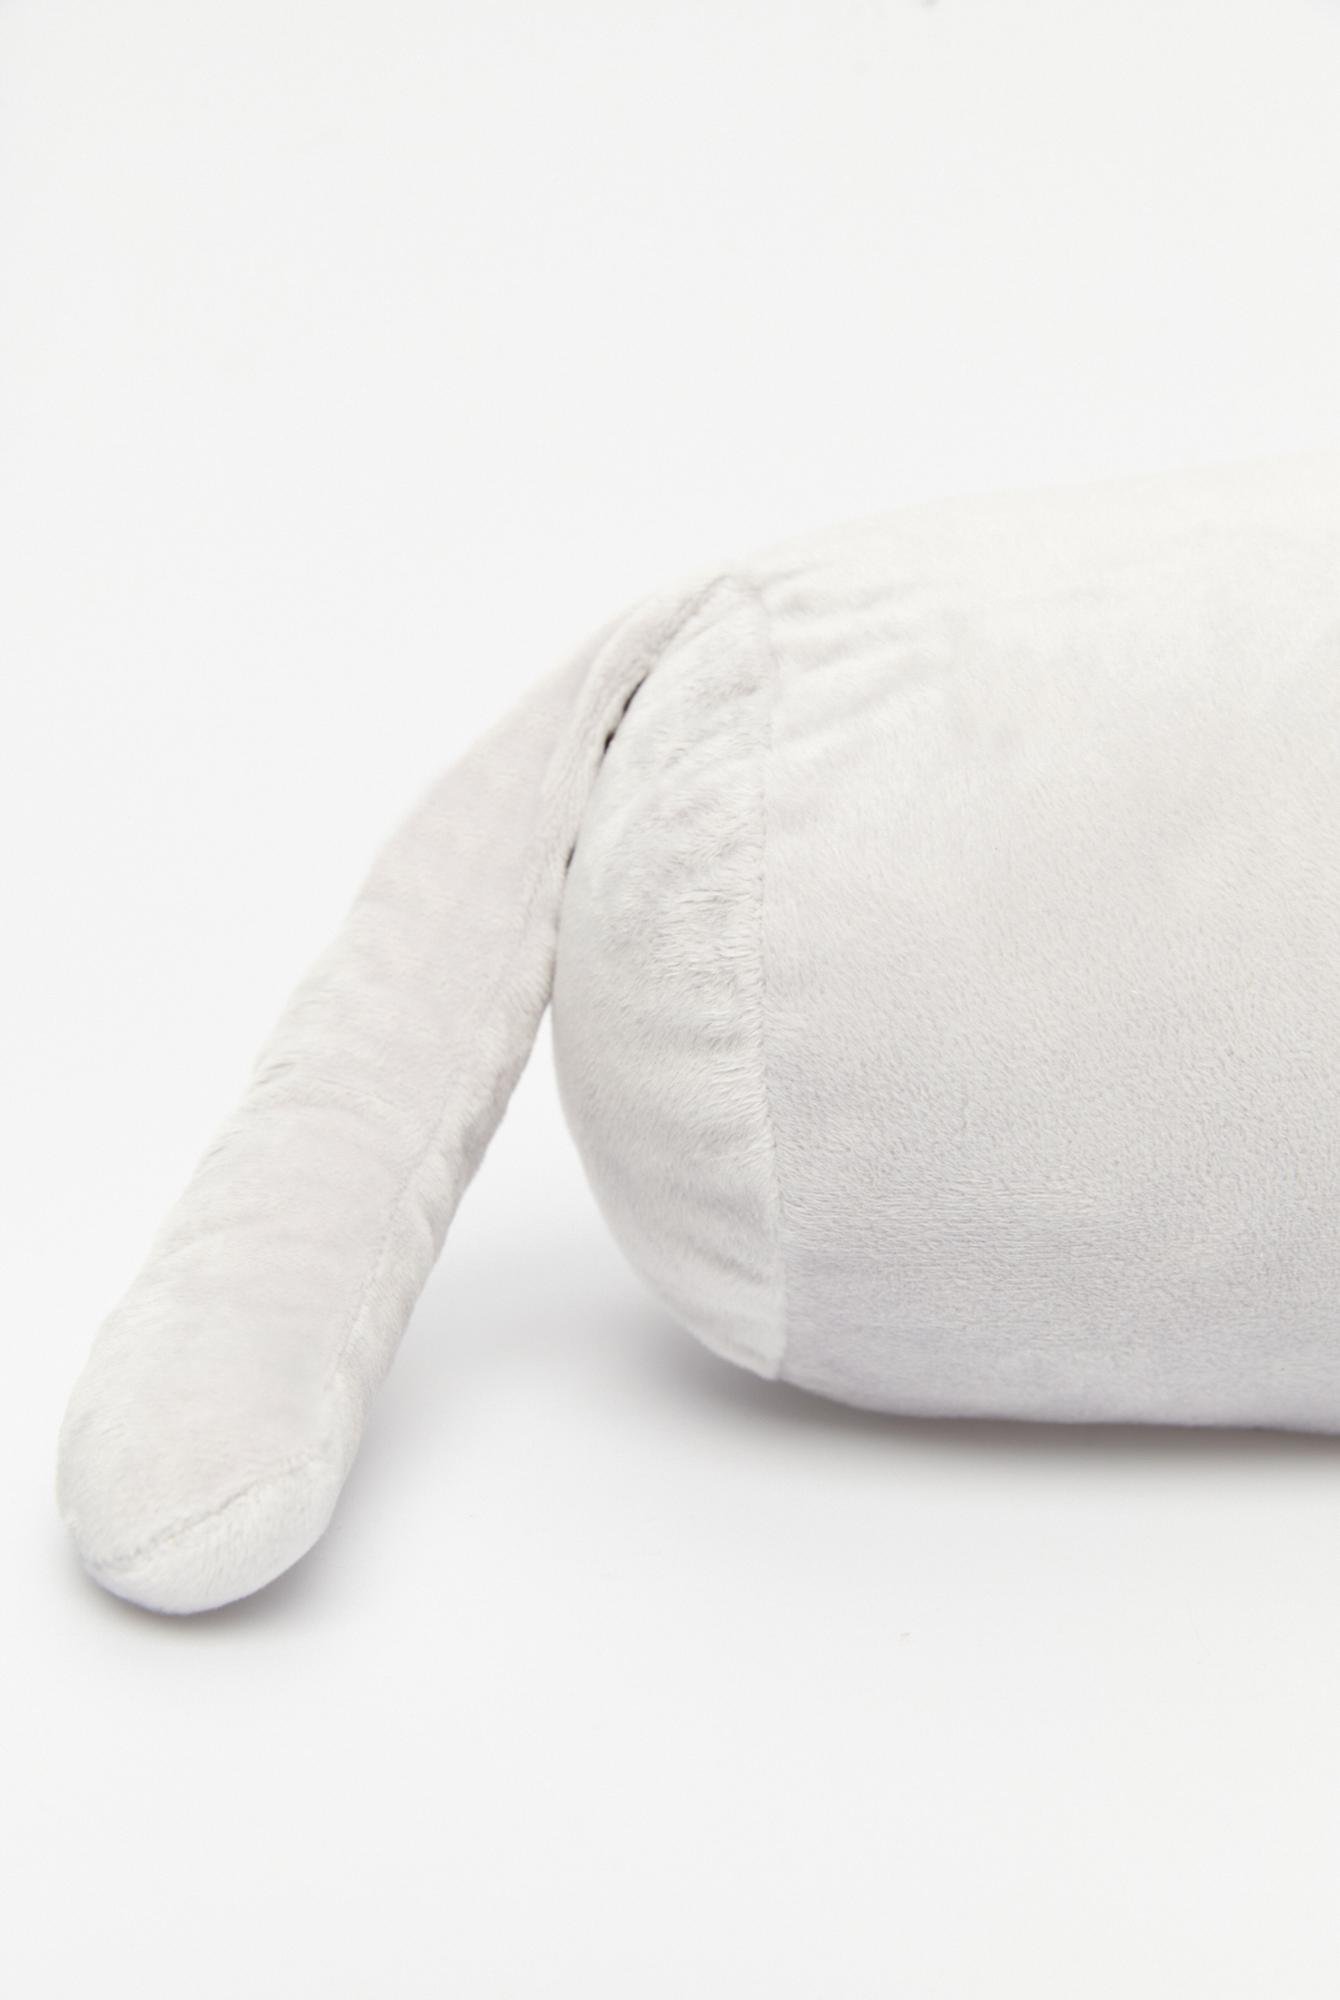  Ecrou Sevimli Kedi Silindir Yastık Gri 40 cm